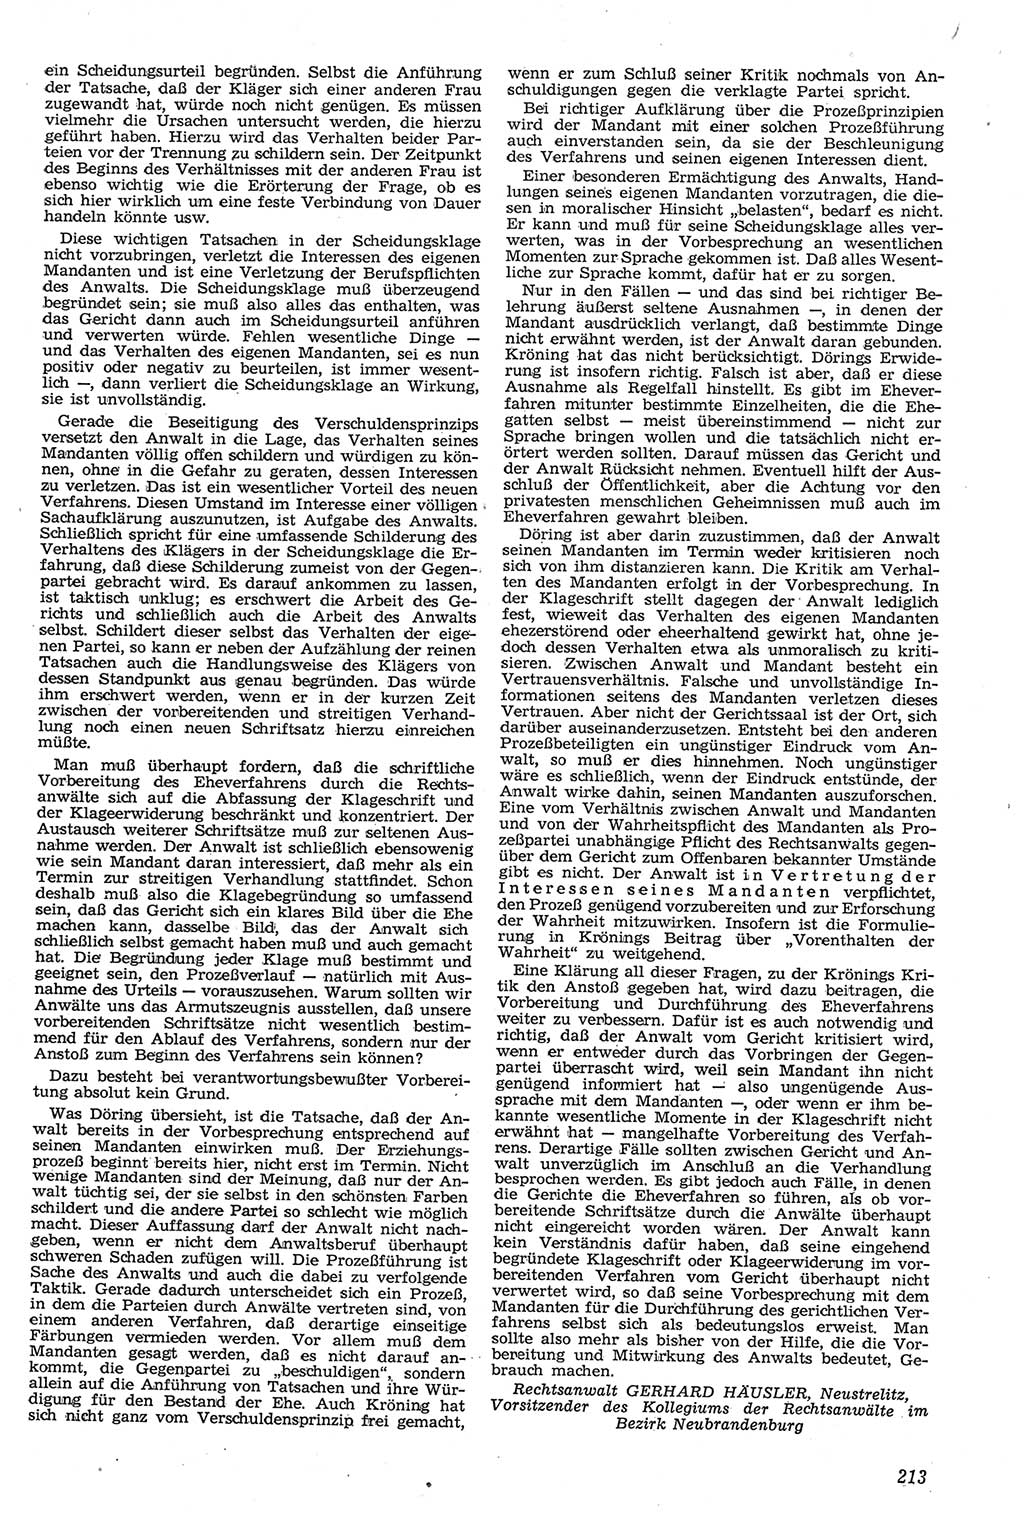 Neue Justiz (NJ), Zeitschrift für Recht und Rechtswissenschaft [Deutsche Demokratische Republik (DDR)], 11. Jahrgang 1957, Seite 213 (NJ DDR 1957, S. 213)